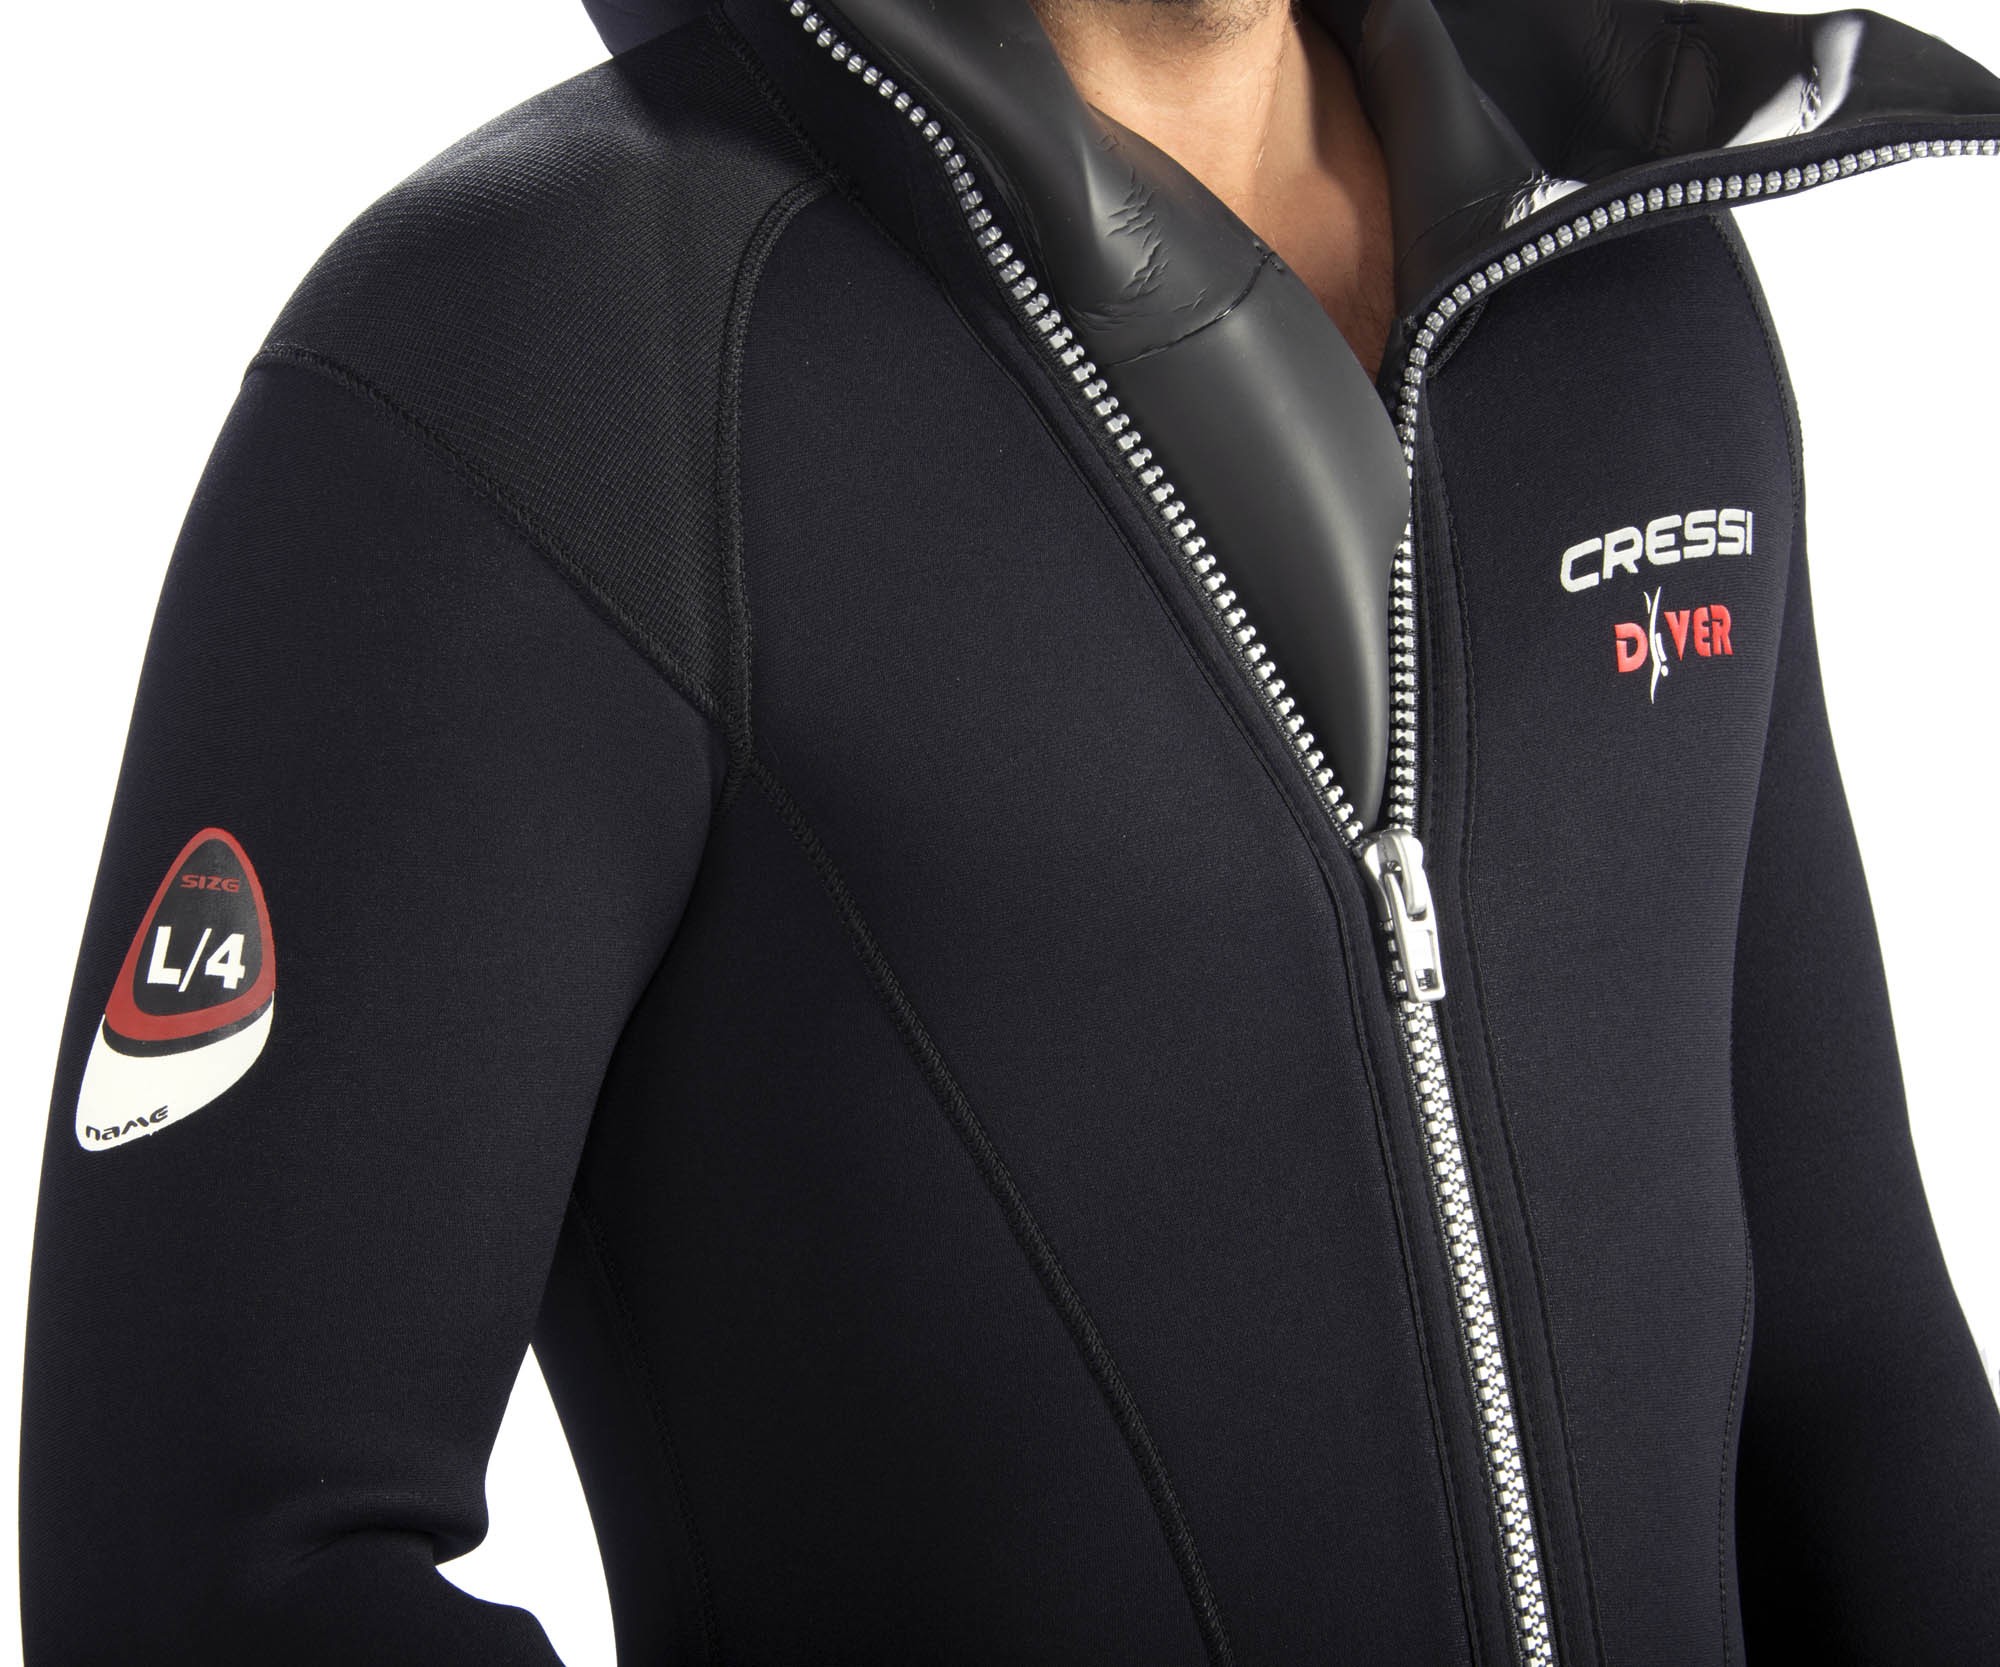 Cressi DIVER Man wetsuit  5 7 mm neoprene suit front zip diving